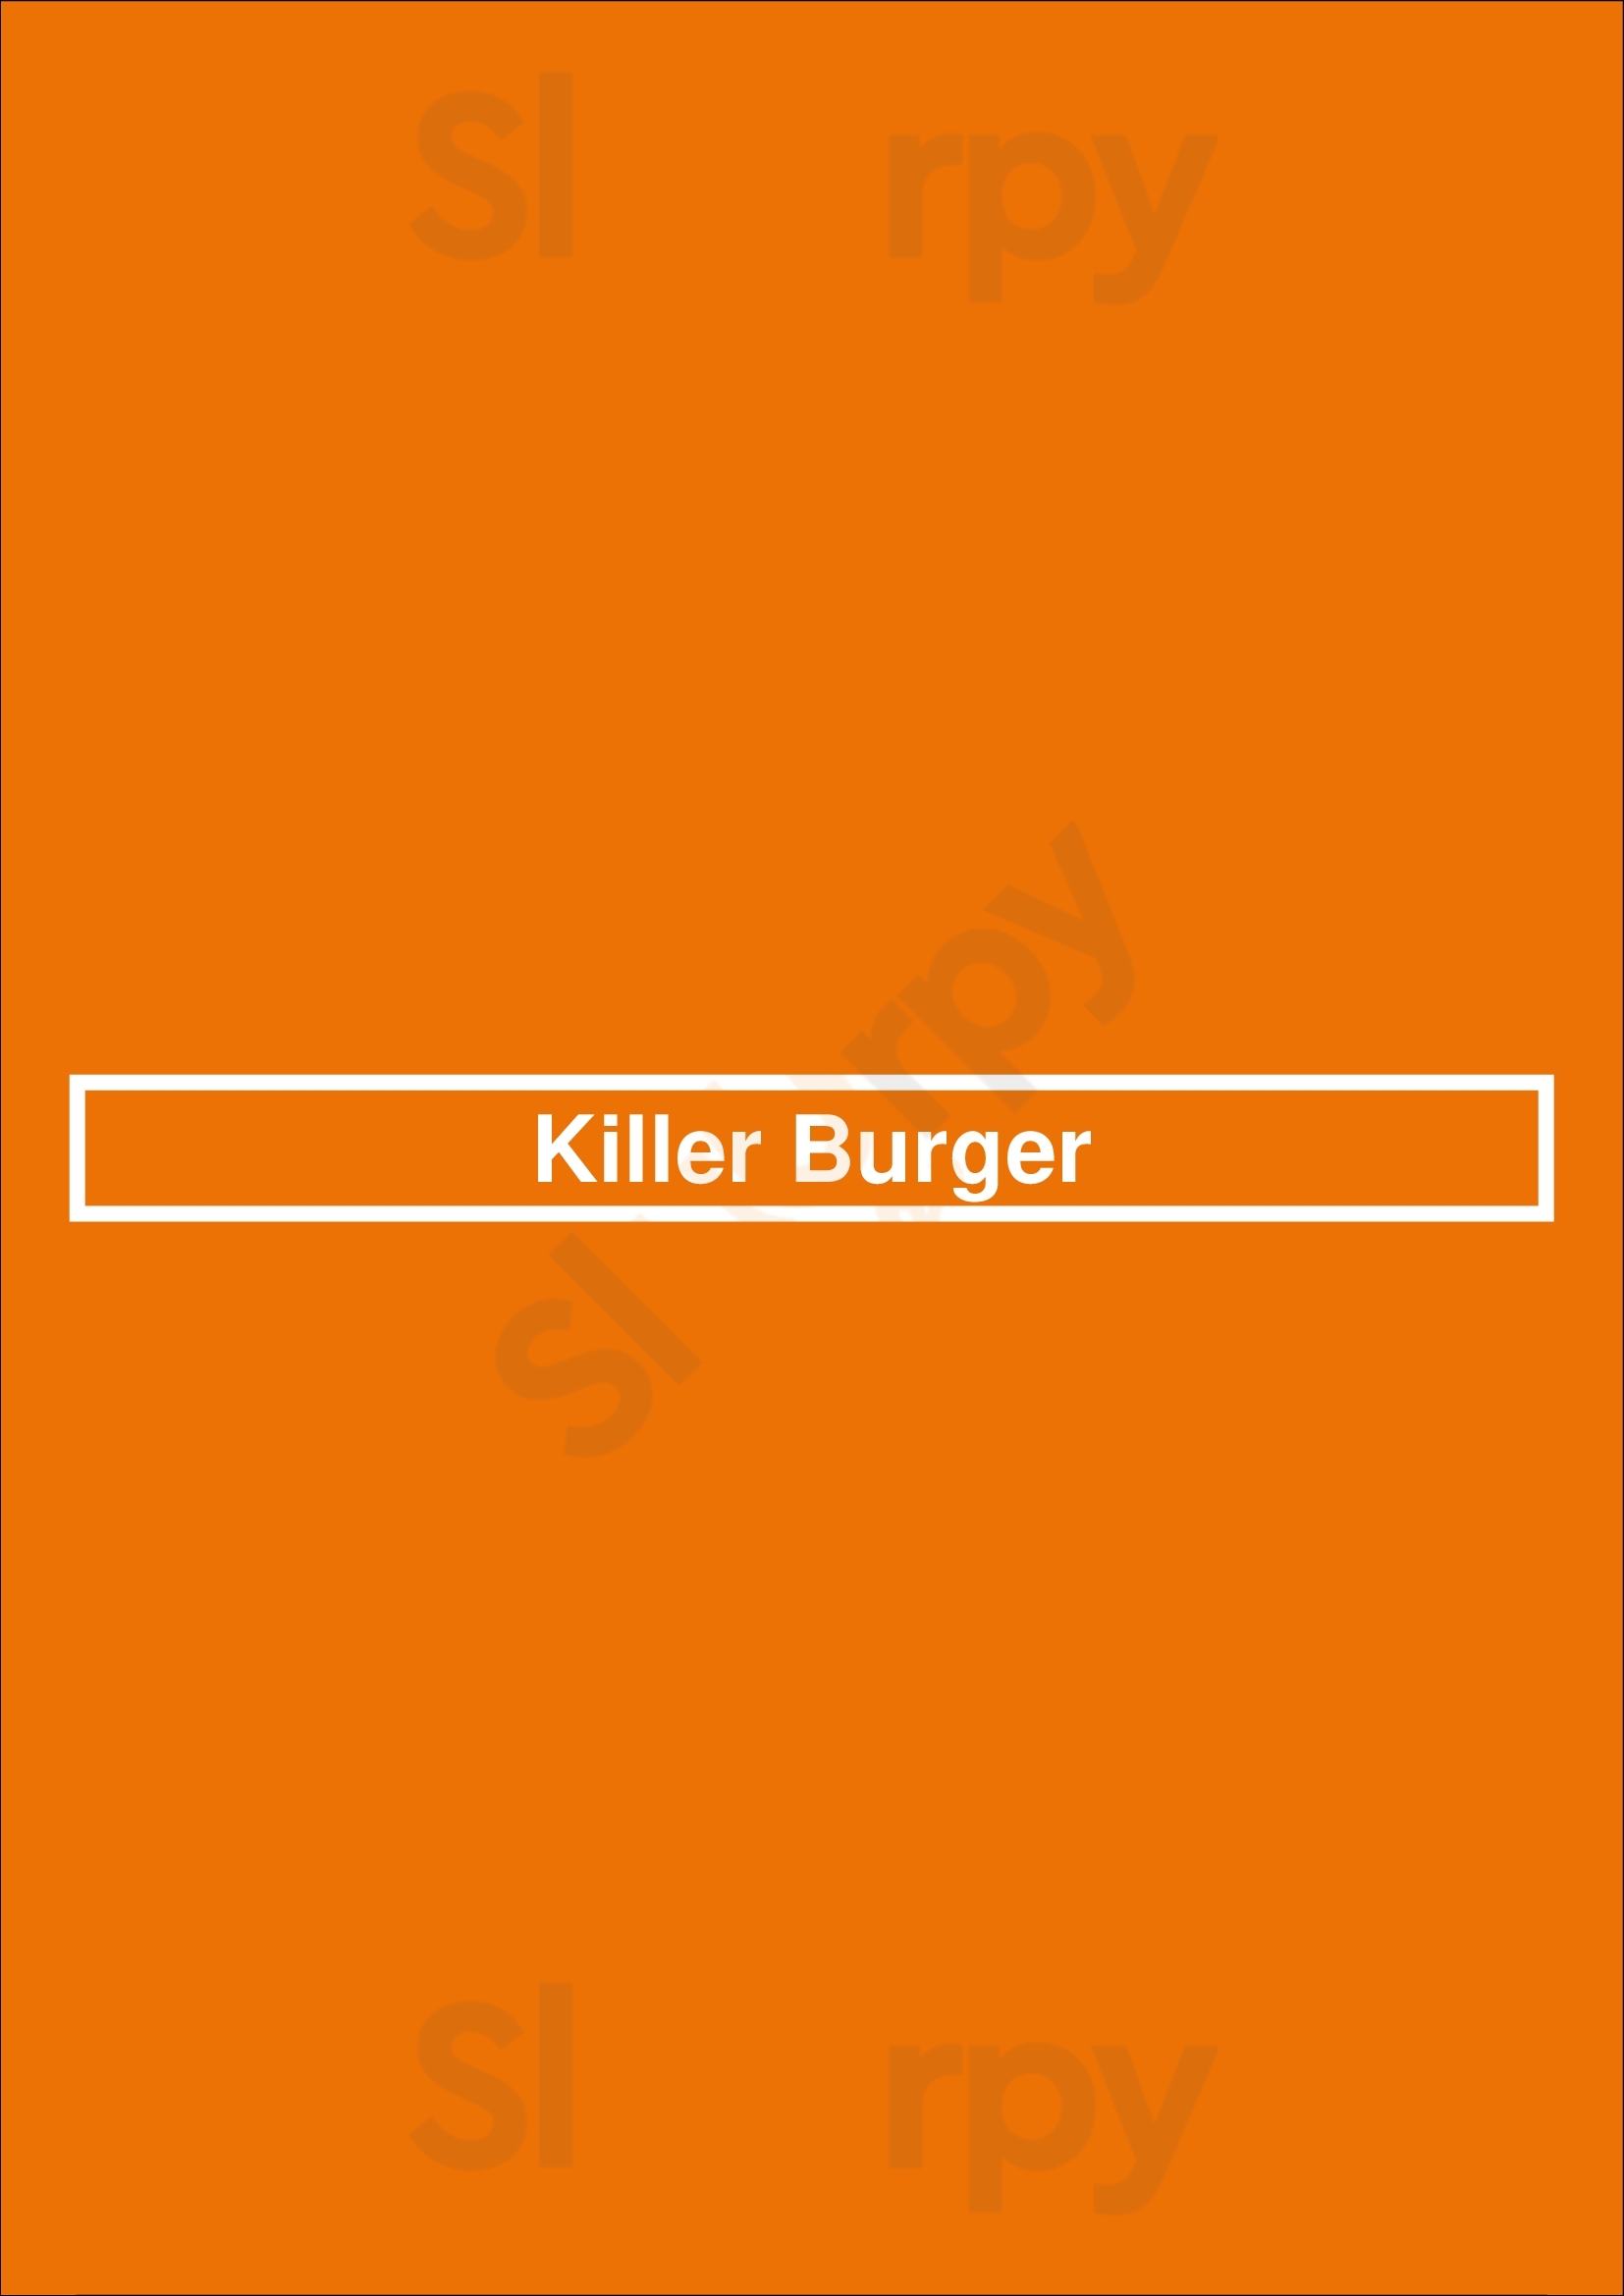 Killer Burger Hillsboro Menu - 1